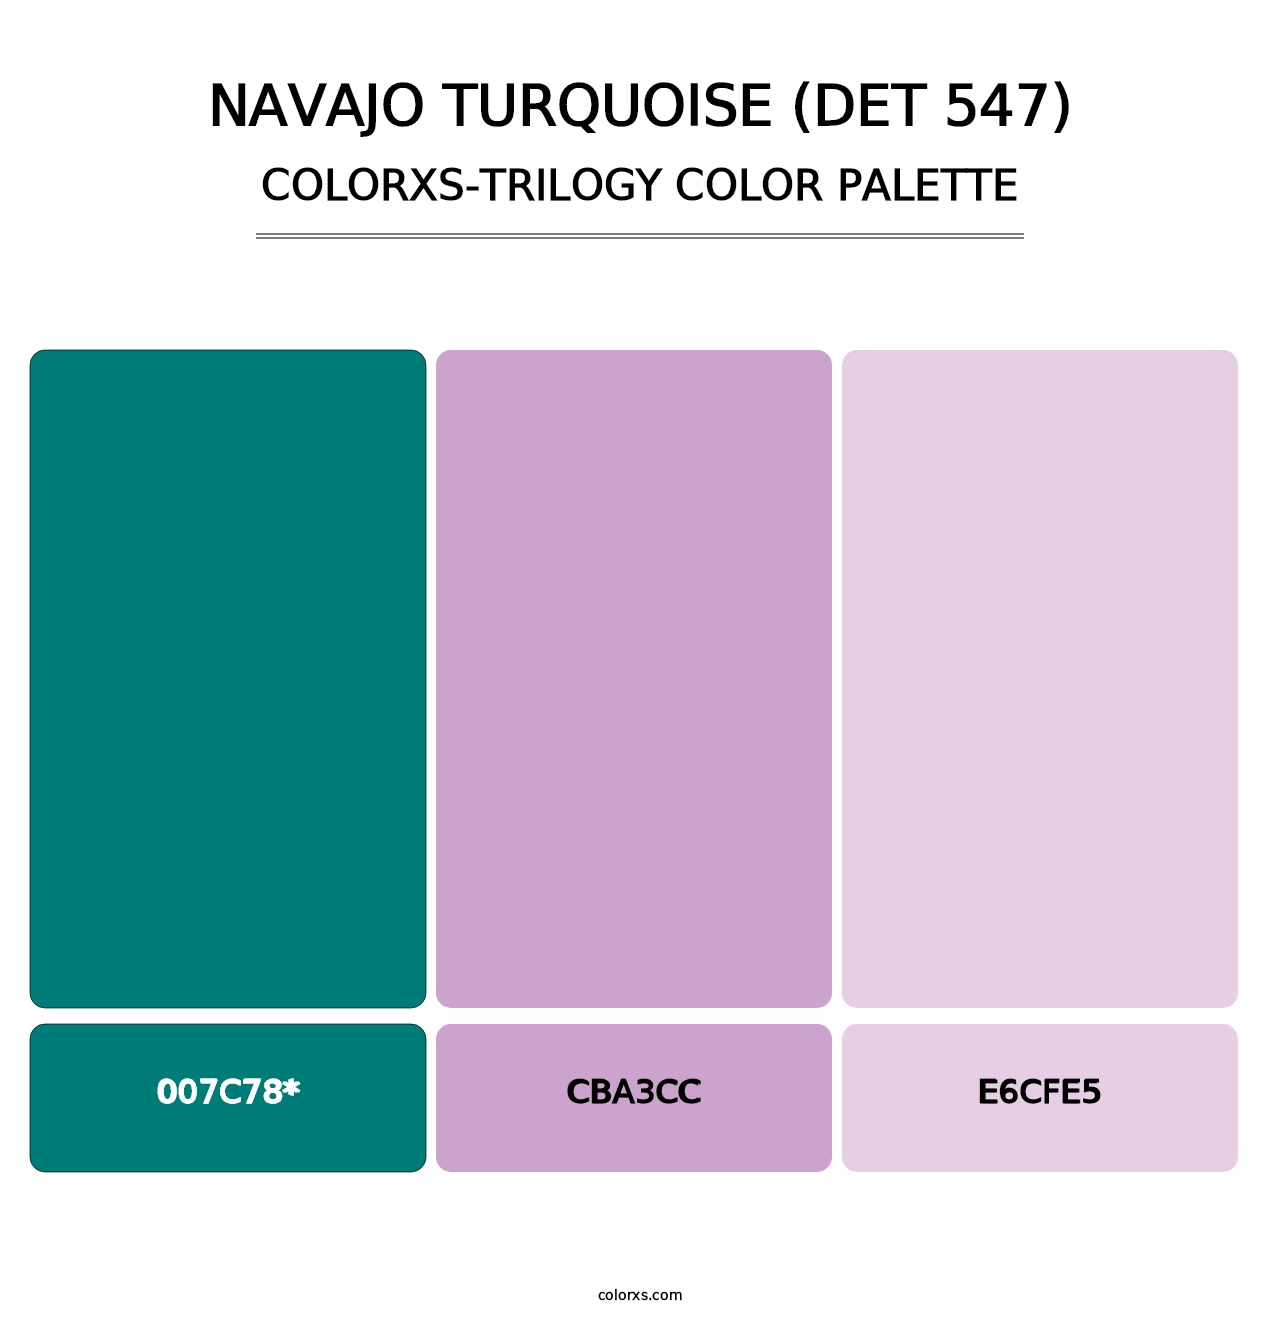 Navajo Turquoise (DET 547) - Colorxs Trilogy Palette